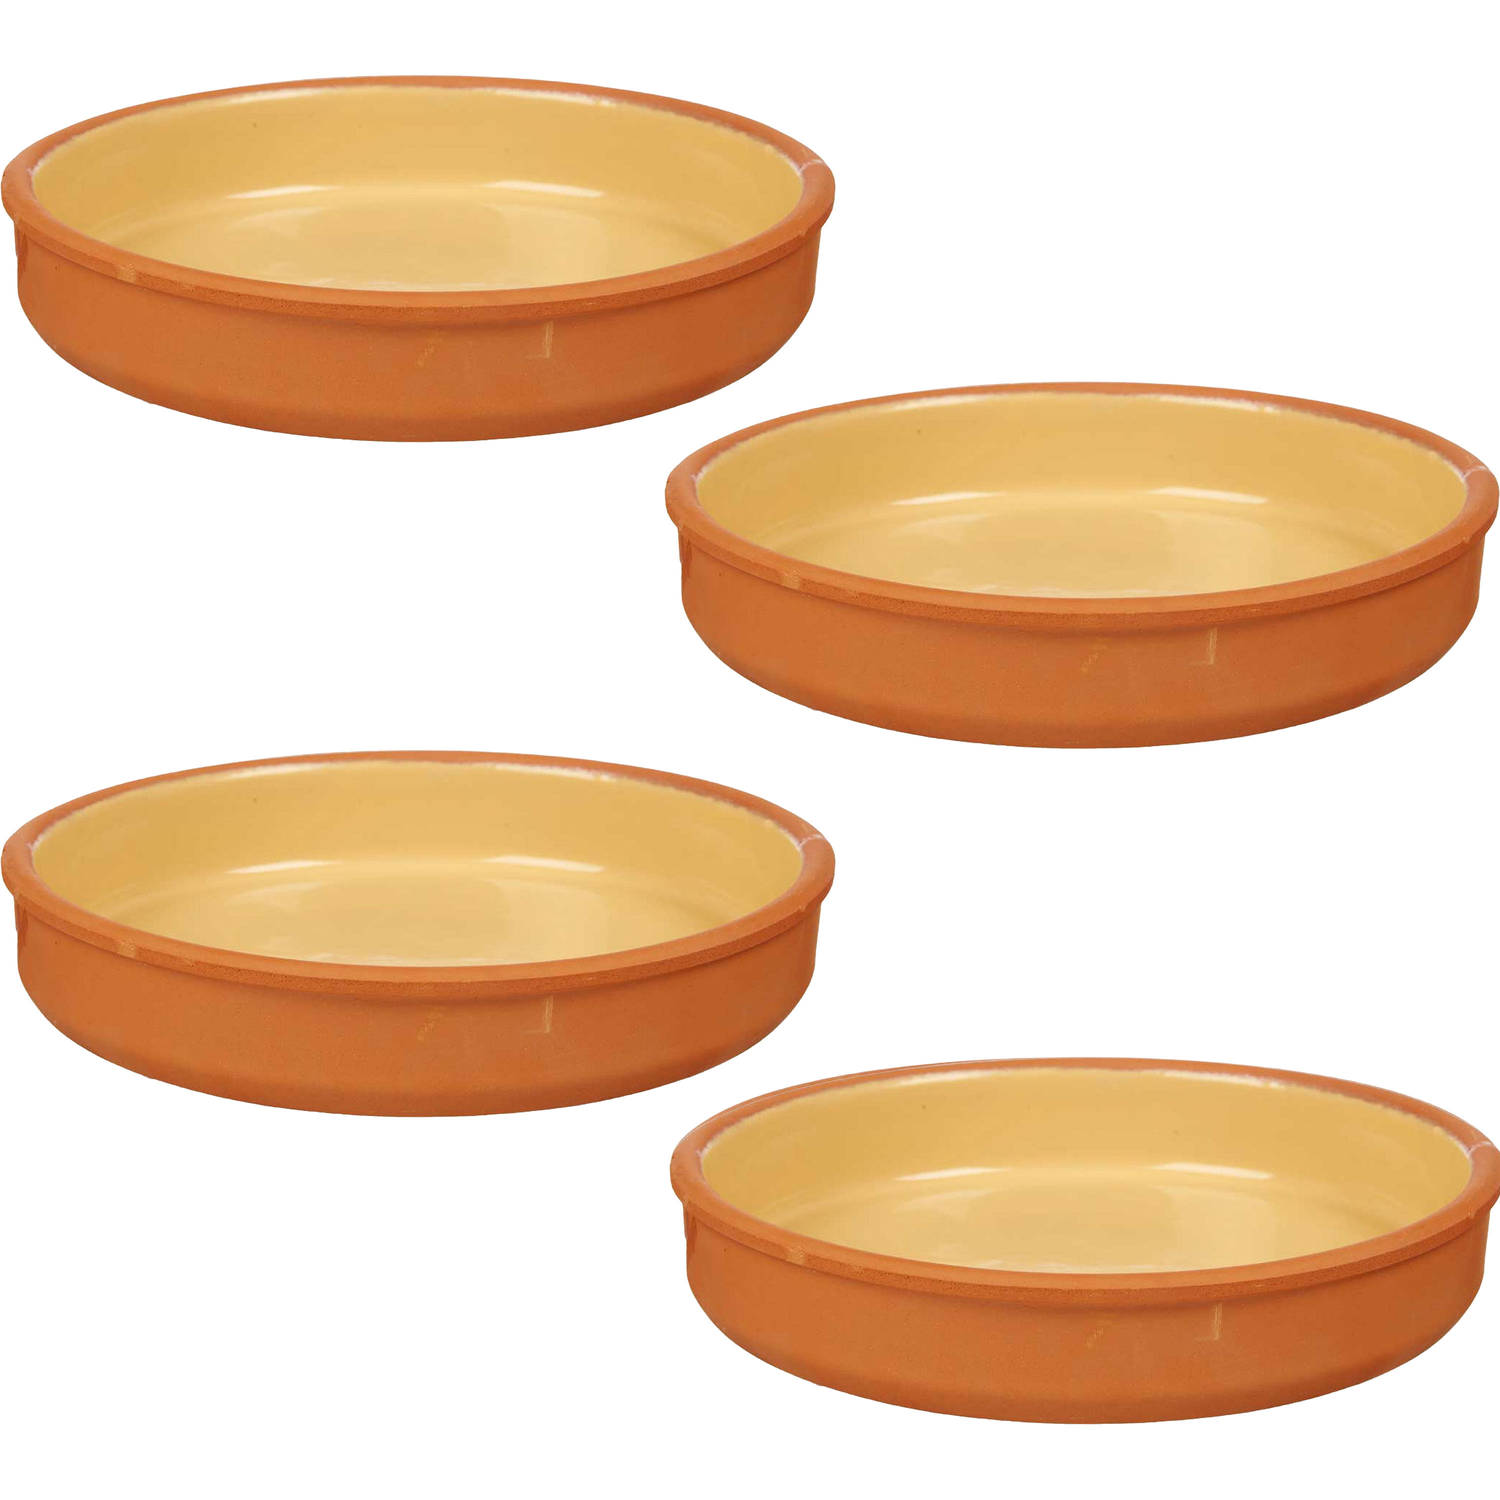 4x stuks tapas-hapjes serveren-oven schaal terracotta-geel 23 x 4 cm Snack en tapasschalen